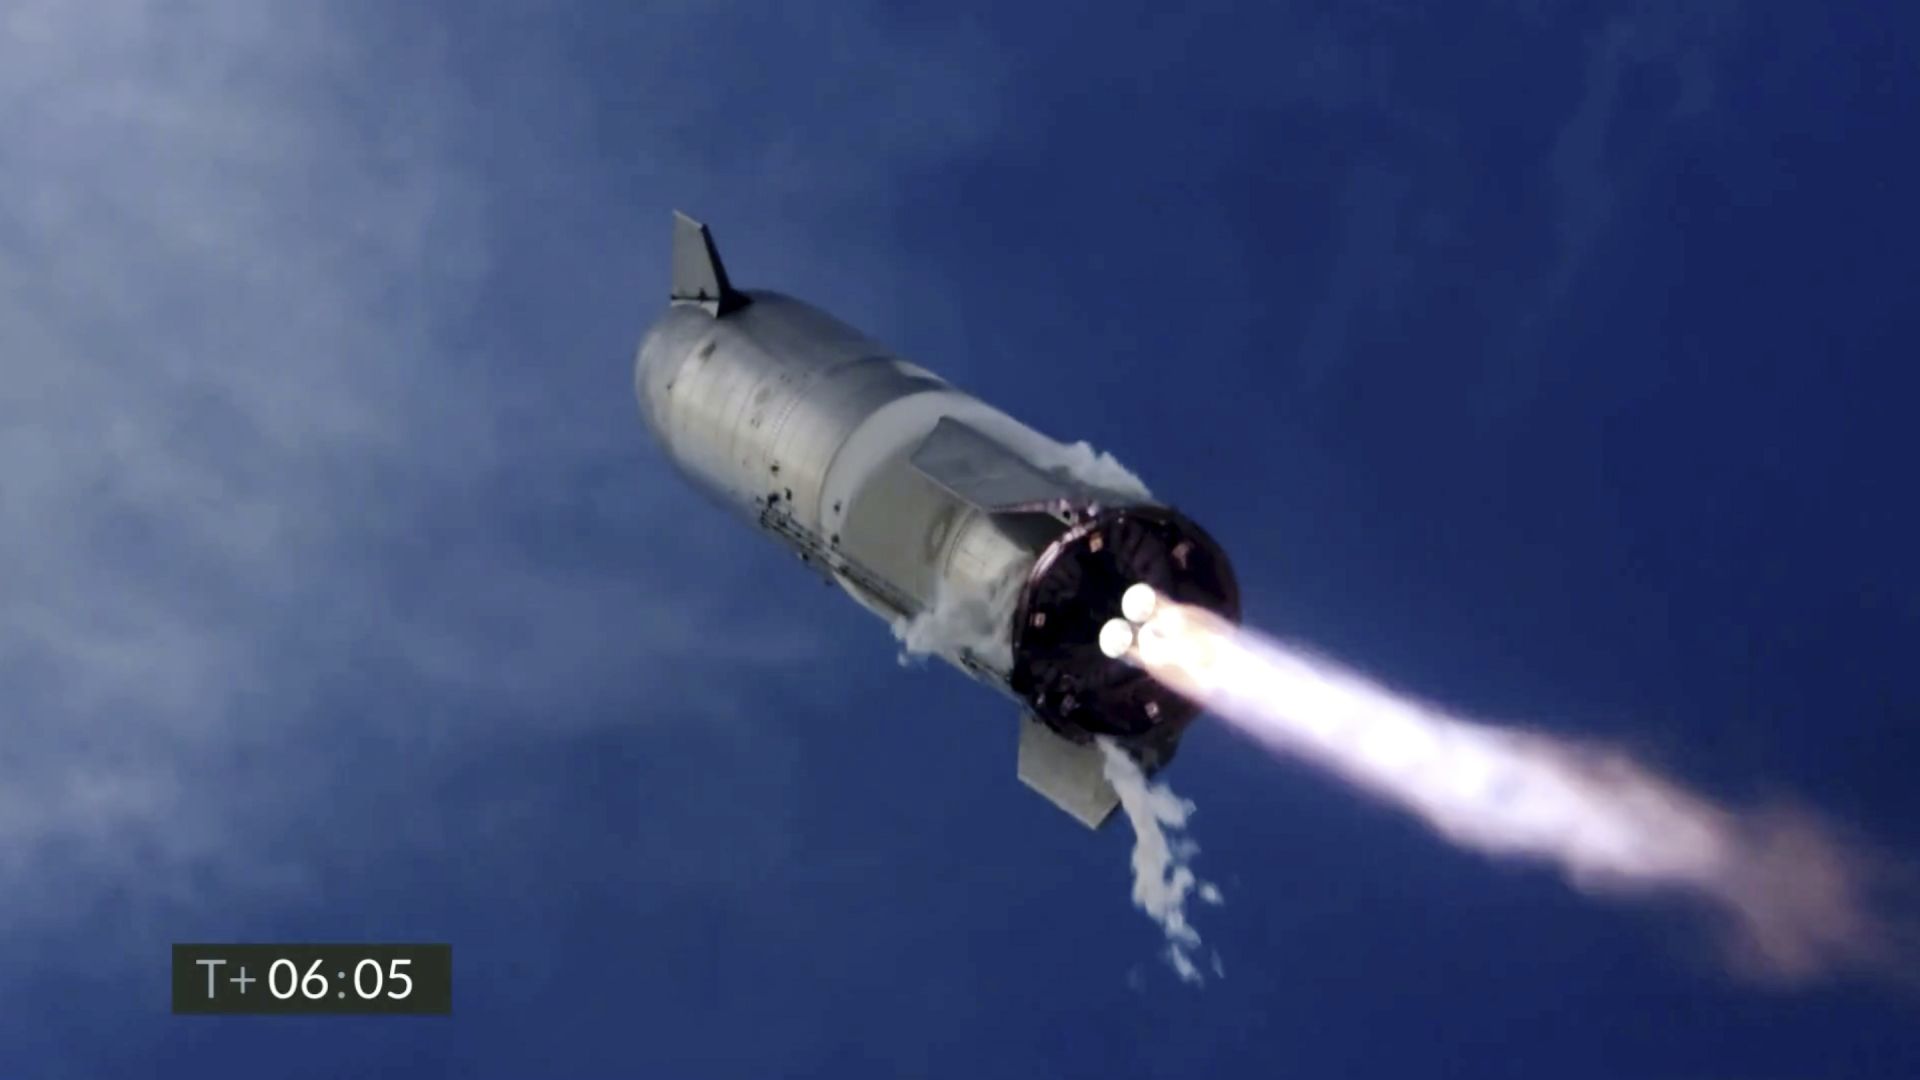 Прототип на космическия кораб "Старшип" пак се взриви след кацане